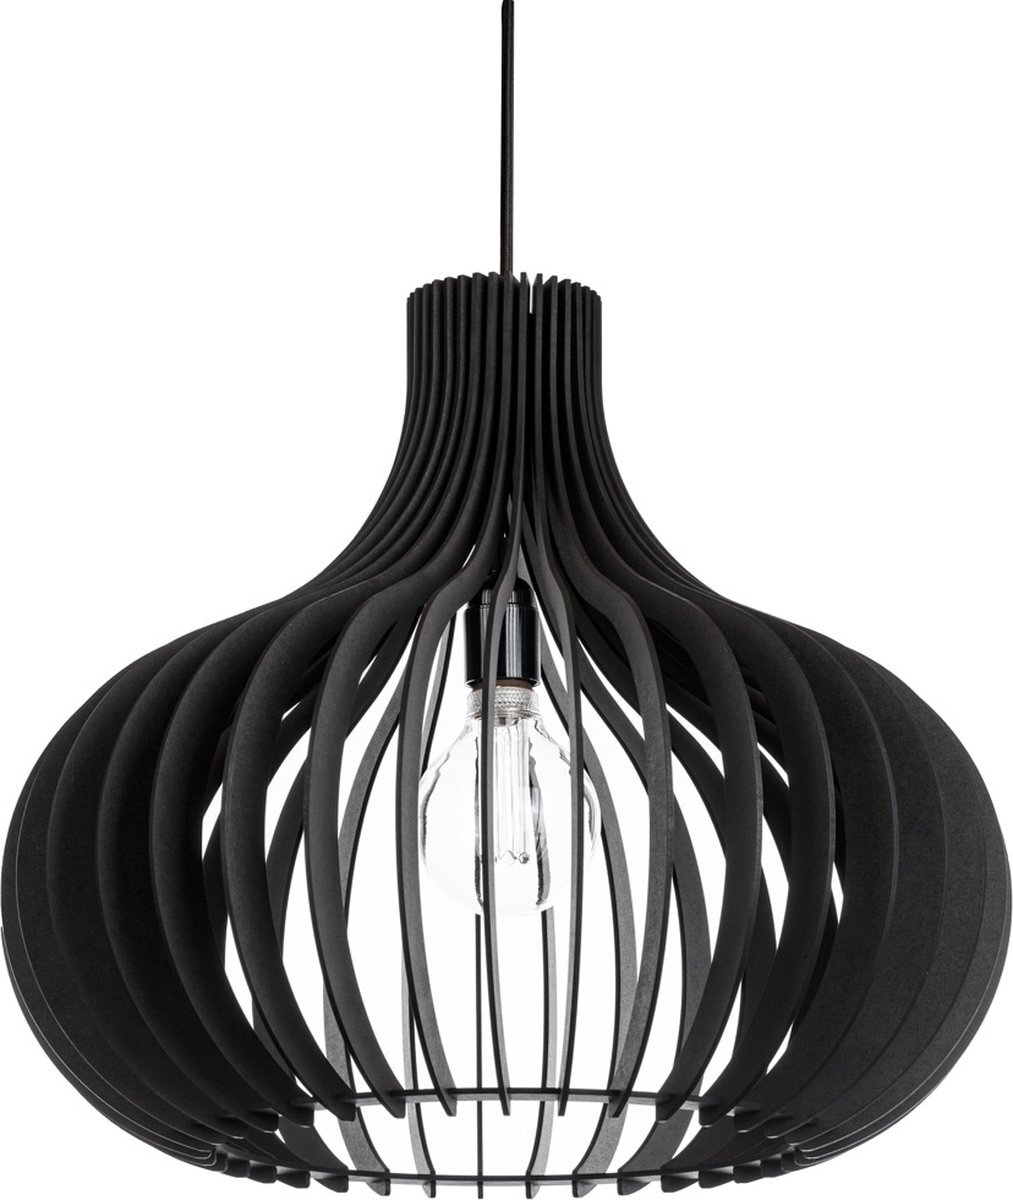 Blij Design Seattle Hanglamp Ø 50cm Zwart